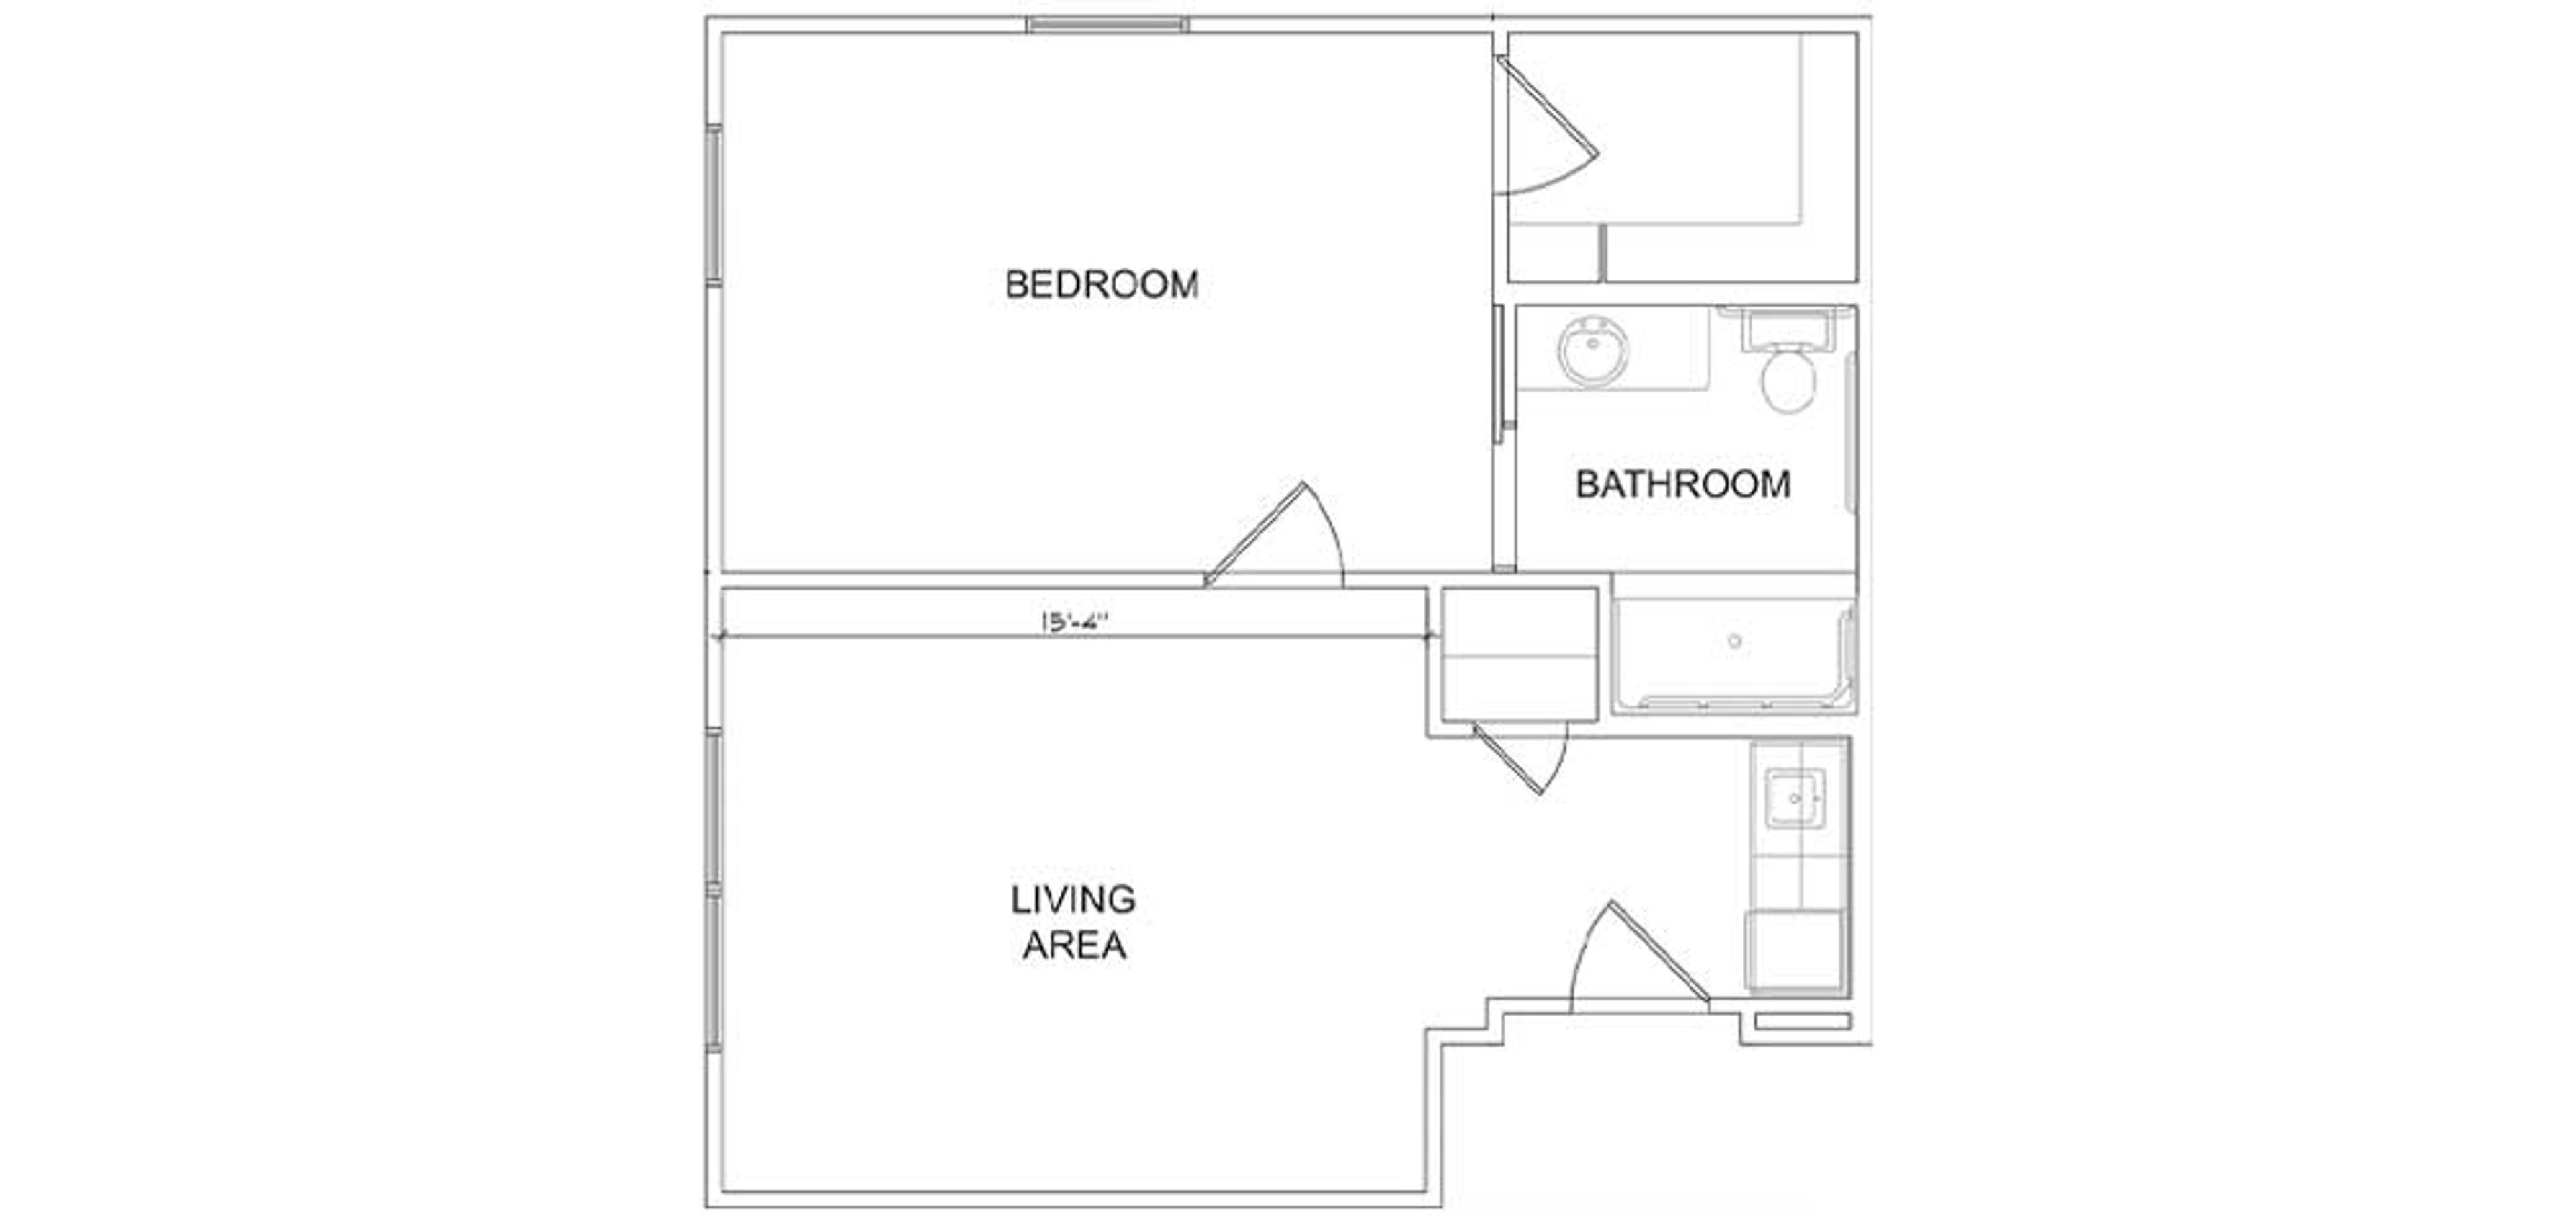 Floorplan - Magnolia Court - 1B 1B Luxury